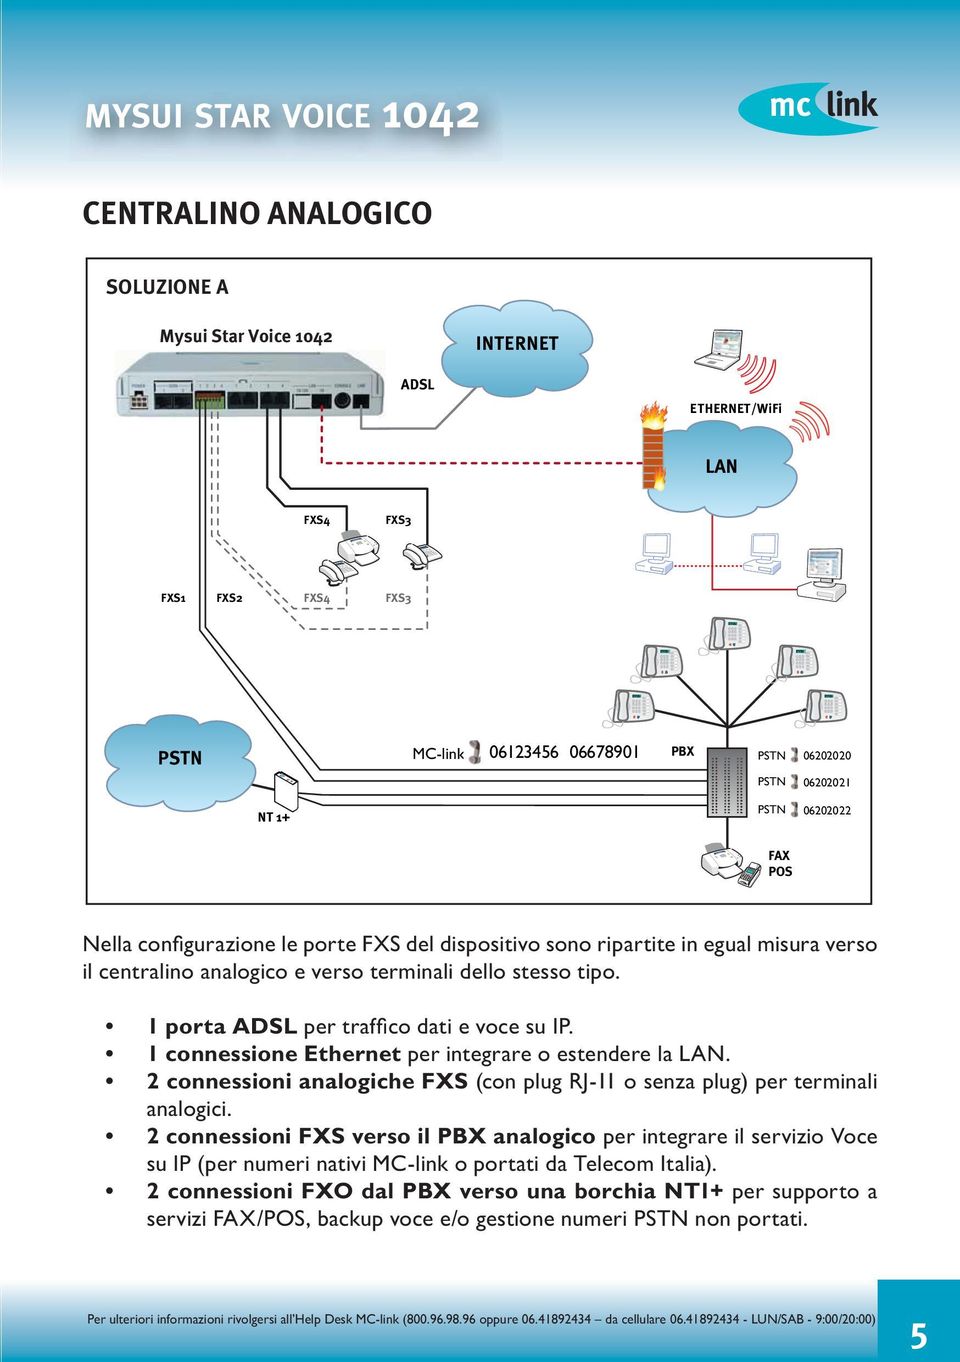 1 connessione Ethernet per integrare o estendere la LAN. 2 connessioni analogiche FXS (con plug RJ-11 o senza plug) per terminali analogici.